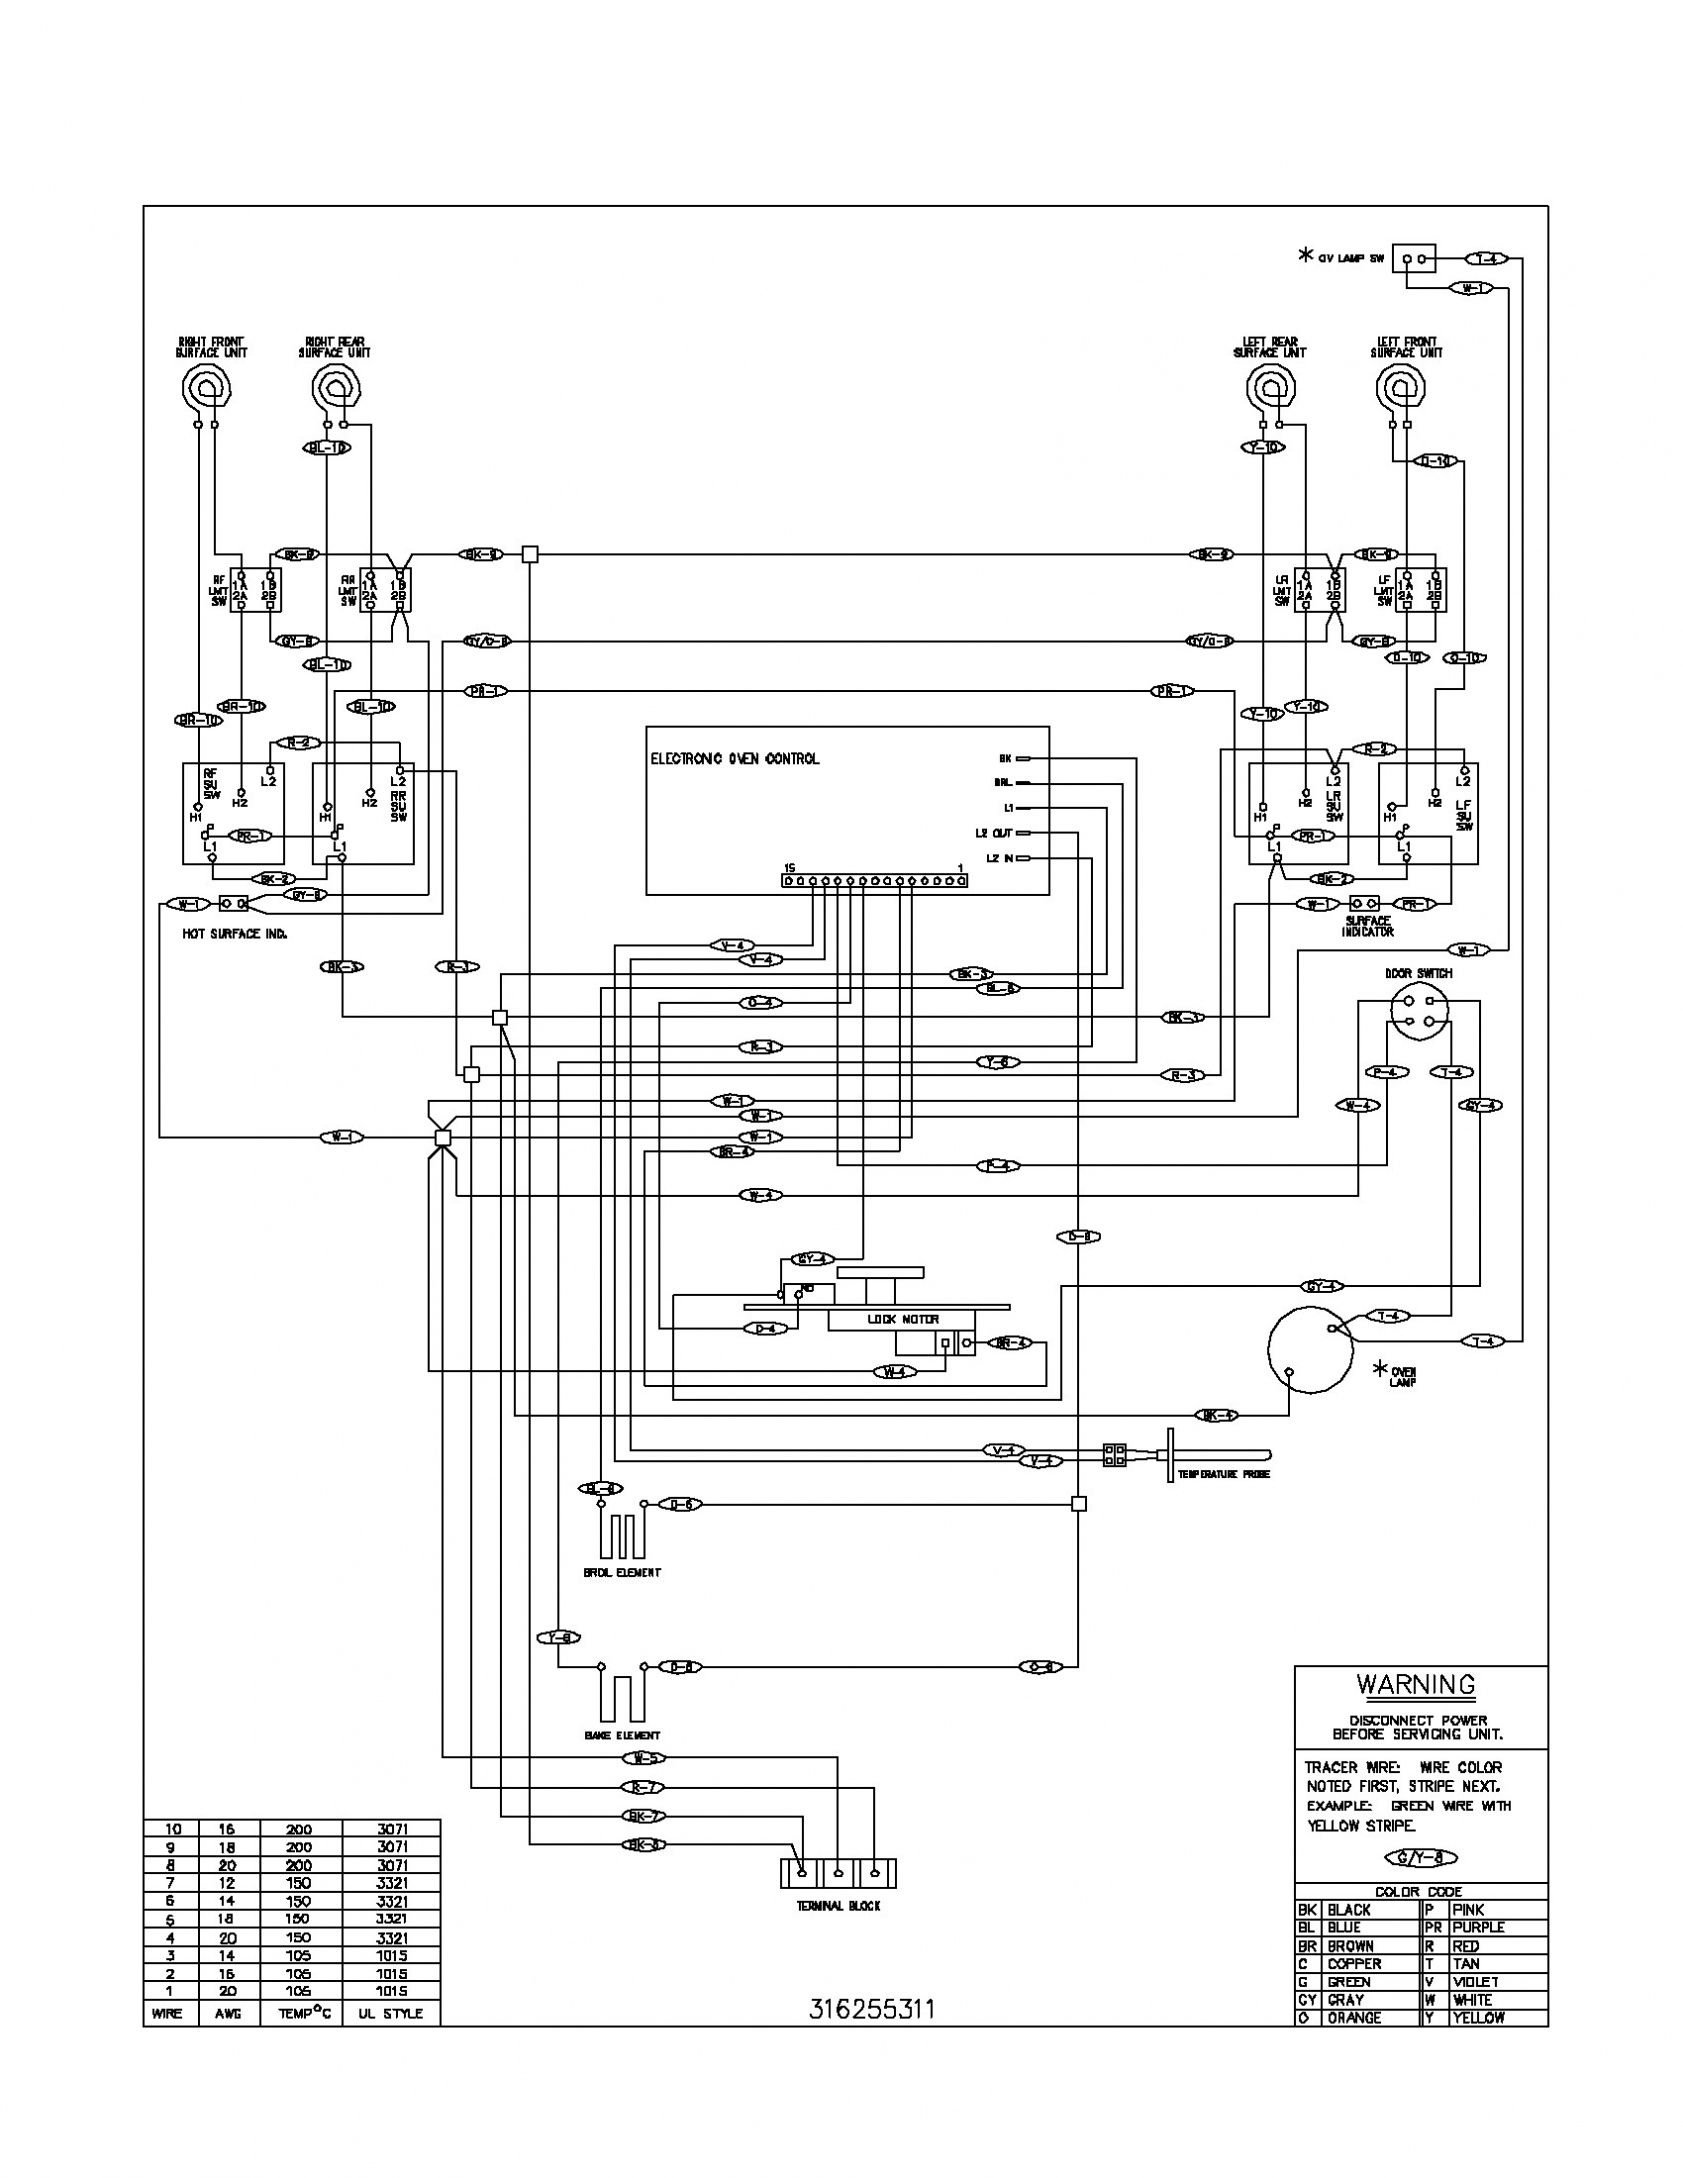 Electric Stove Wiring Diagram — Daytonva150 - Electric Stove Wiring Diagram